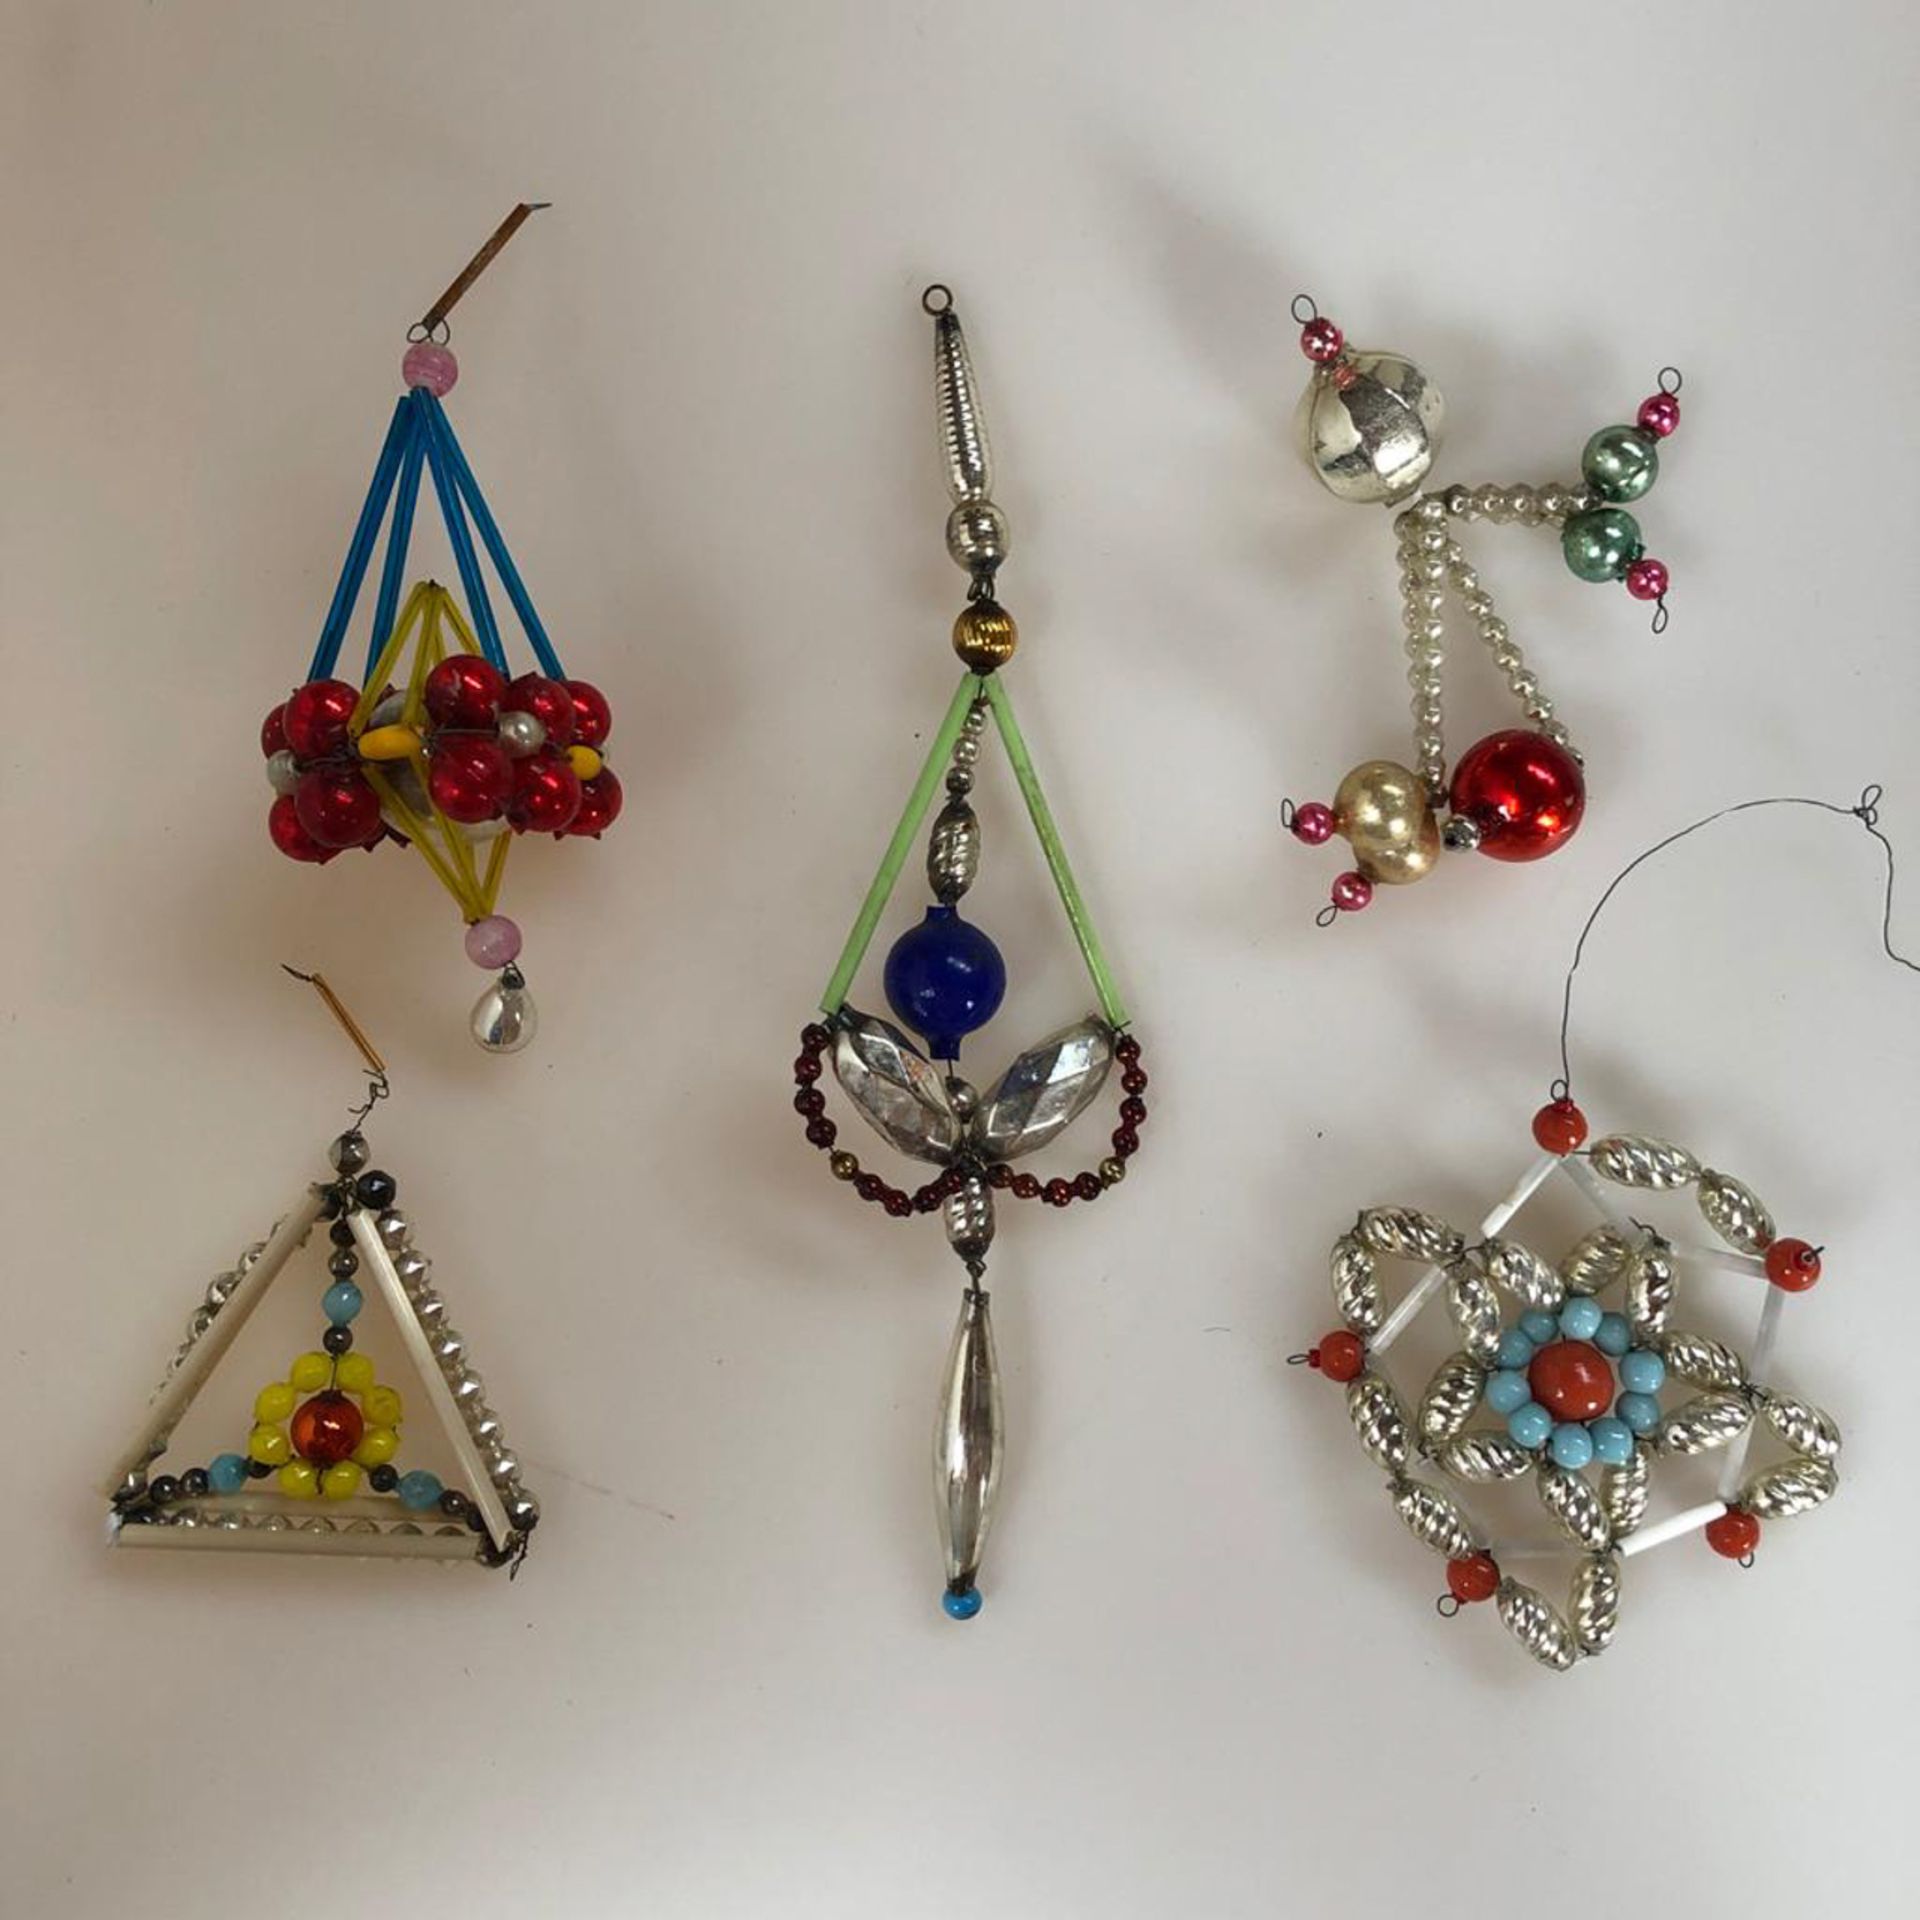 Christbaumschmuck, Gablonz, 5 verschiedene Ornamente, zw. 9 und 19 cm